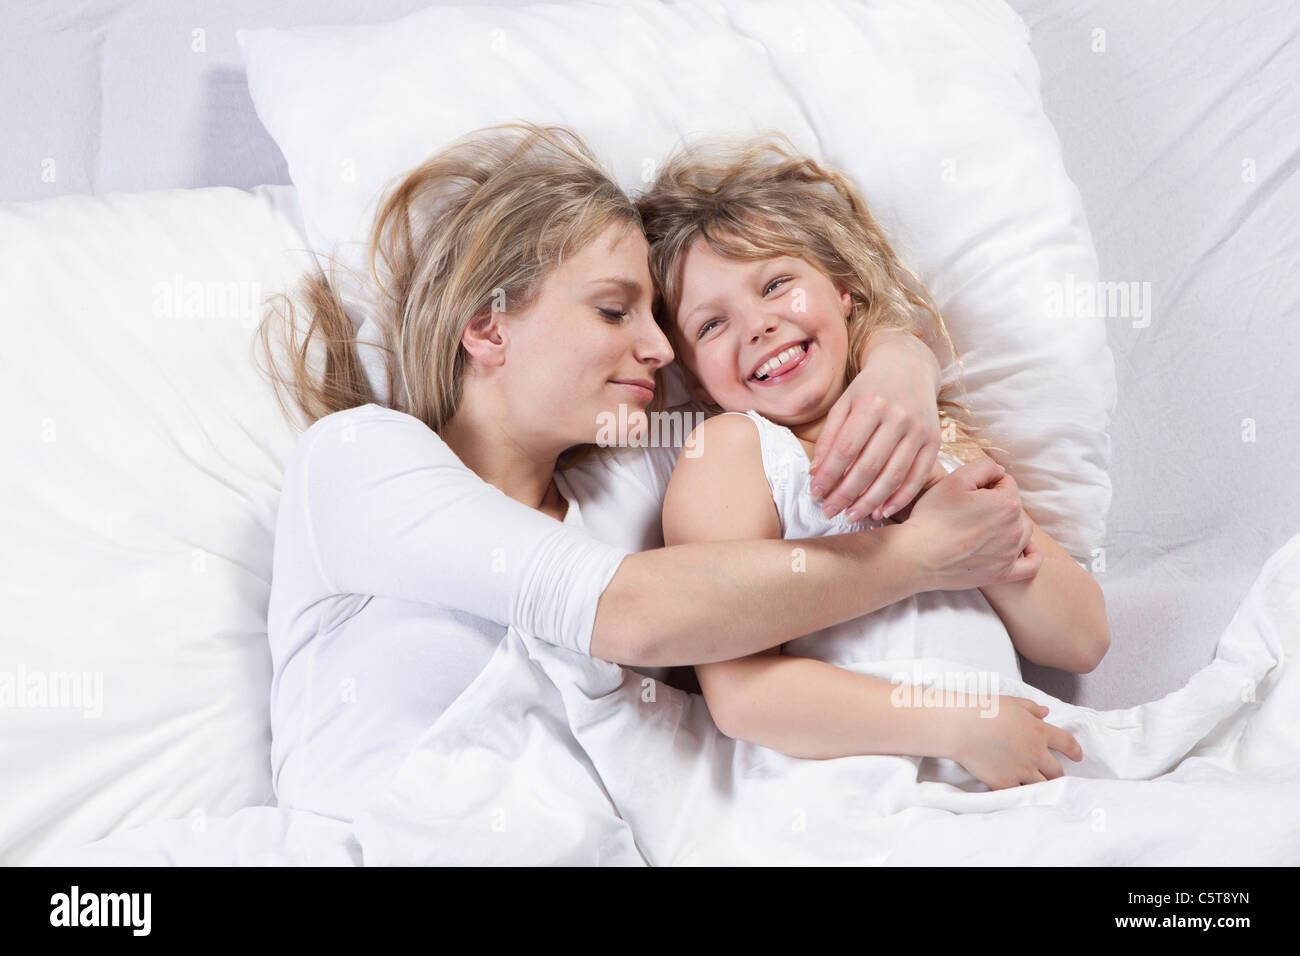 In Germania, in Baviera, Monaco di Baviera, madre e figlia giacente sul letto Foto Stock